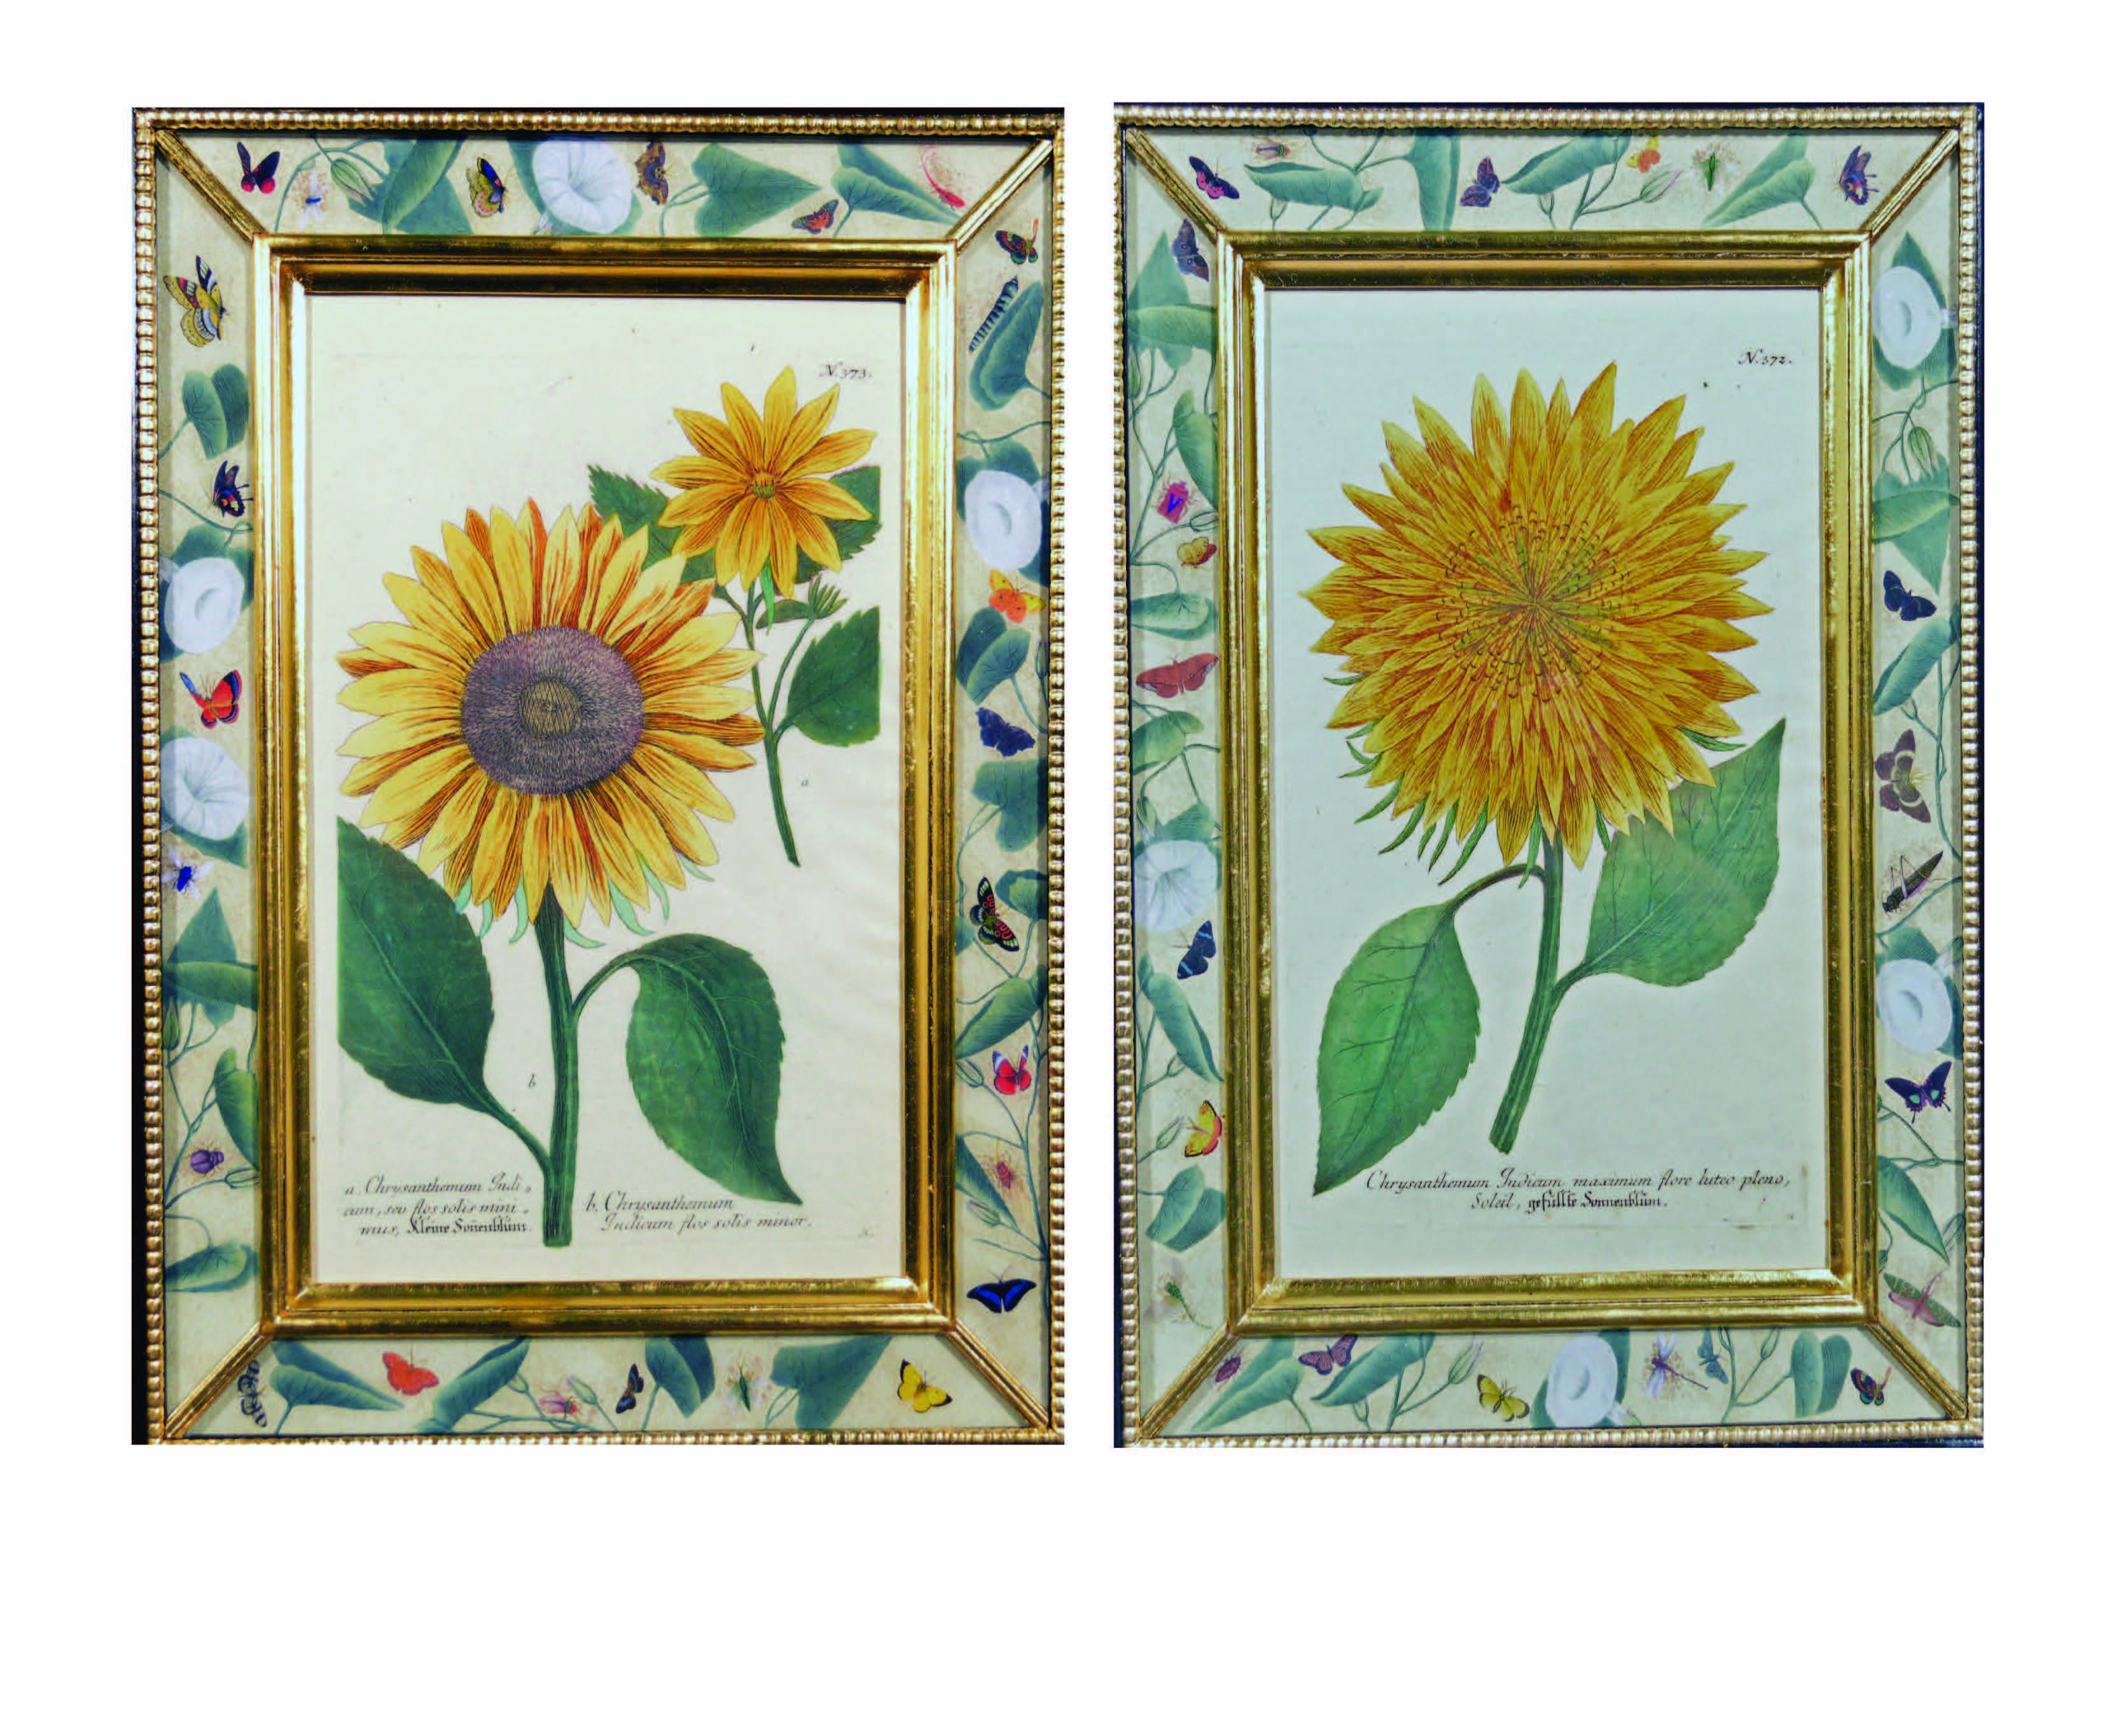 A Pair of Johann Wilhelm Weinmann Engraving of a Sunflower